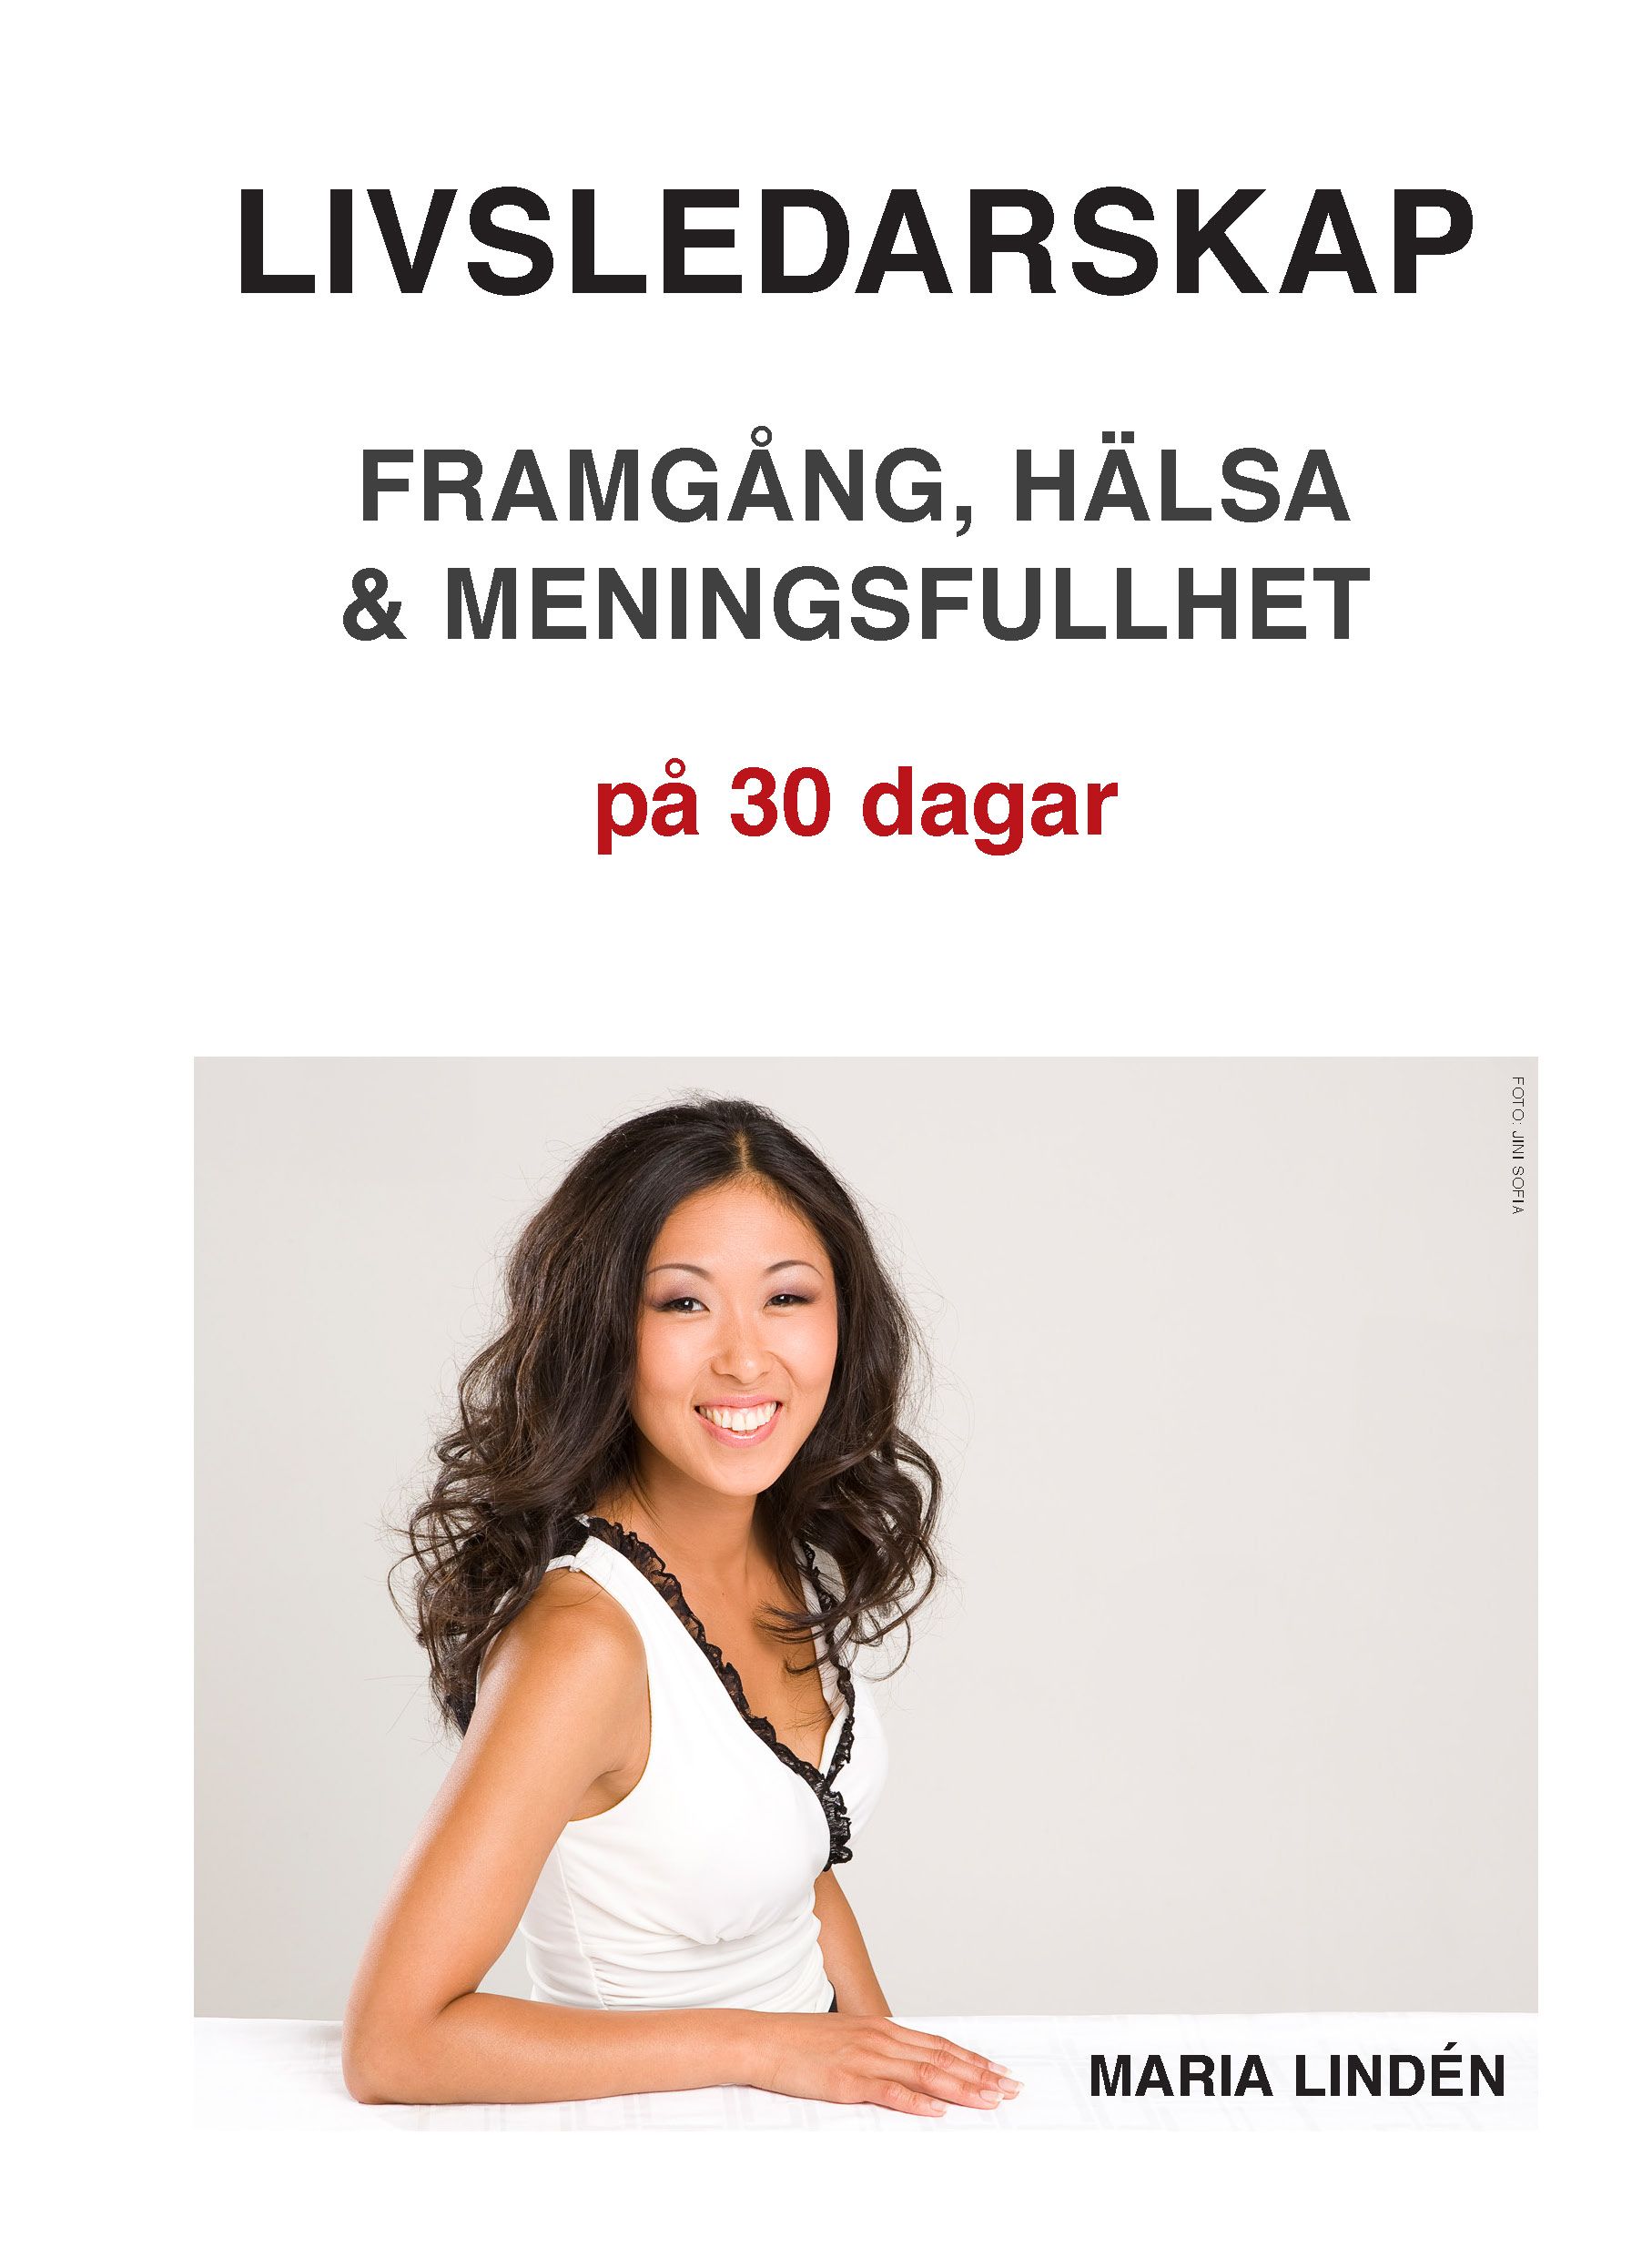 Livsledarskap – Framgång, hälsa & meningsfullhet på 30 dagar, e-bok av Maria Lindén